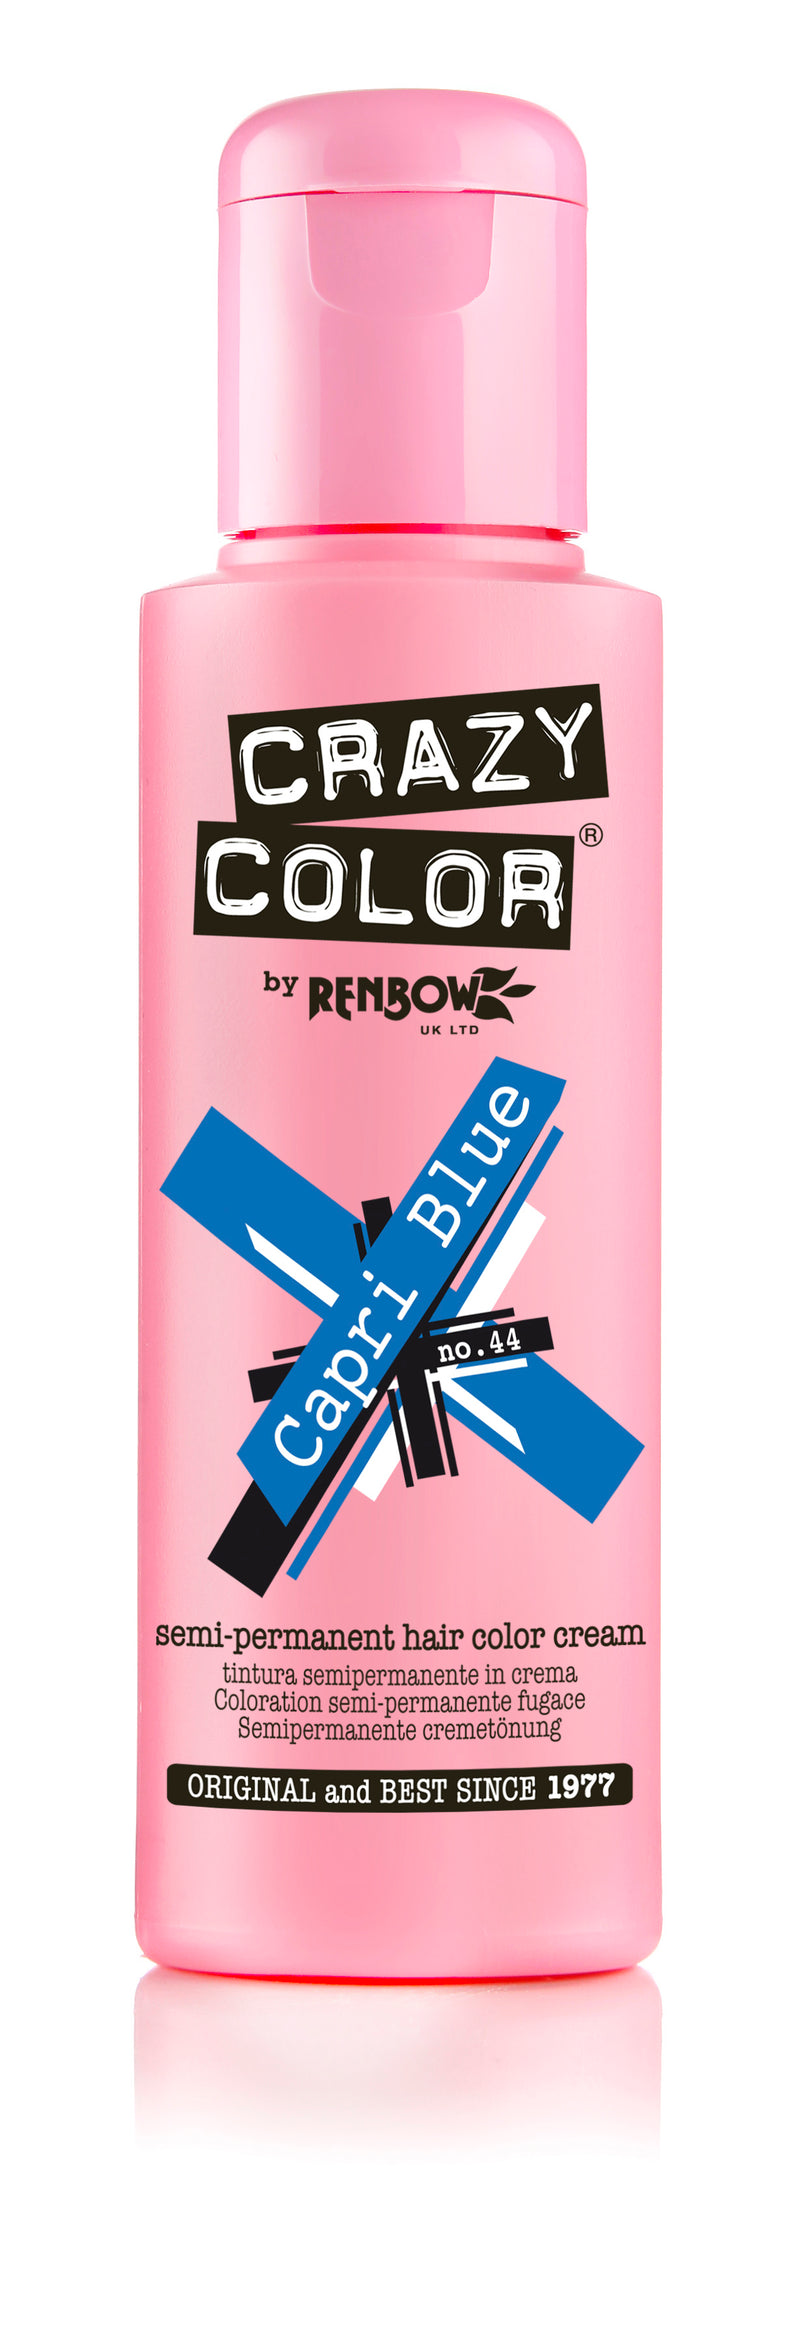 Crazy Color Capriblue